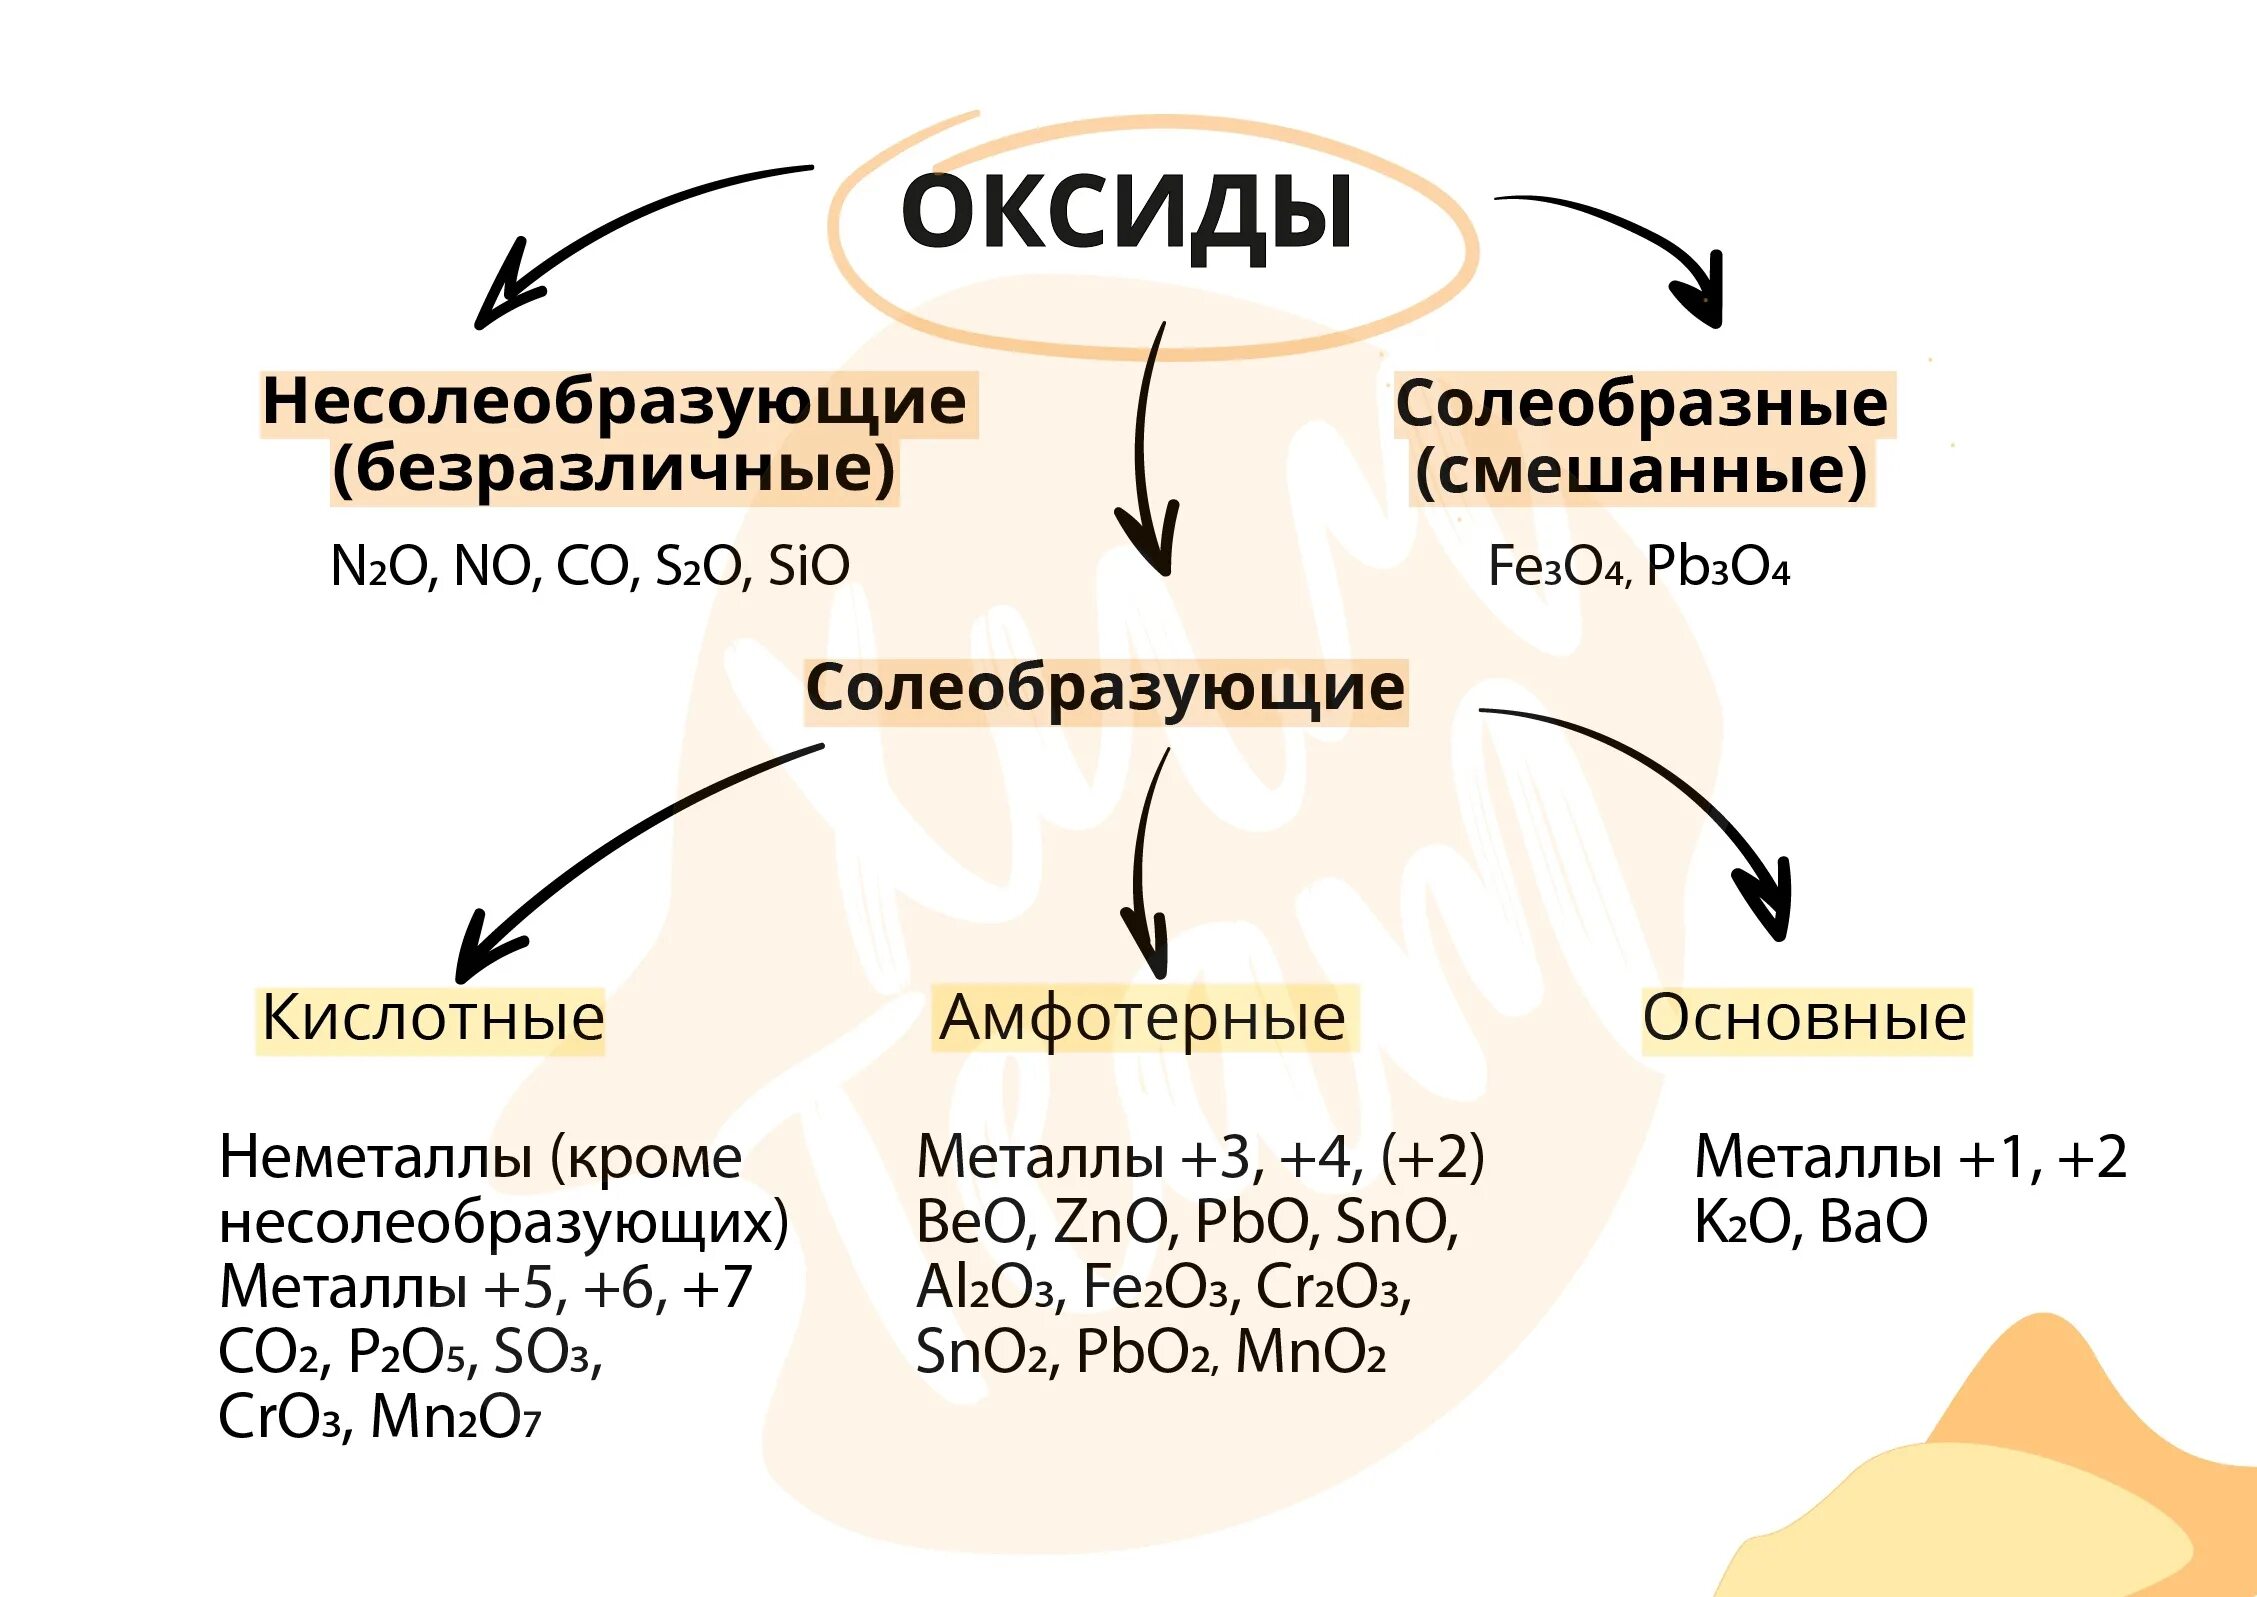 Несолеобразующие оксиды. Примеры несолеобразующих оксидов. Классификация оксидов несолеобразующие. Основные оксиды и несолеобразующие оксиды.